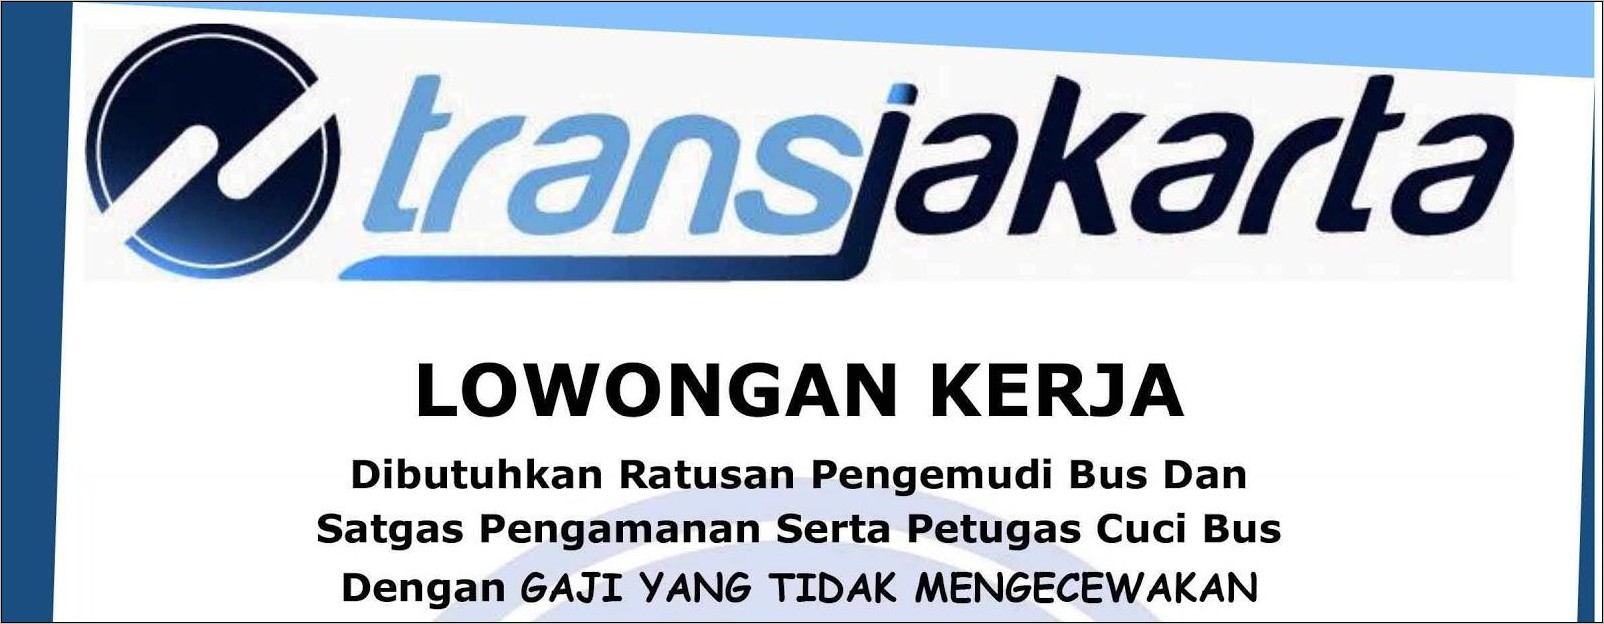 Contoh Surat Lamaran Kerja Transjakarta